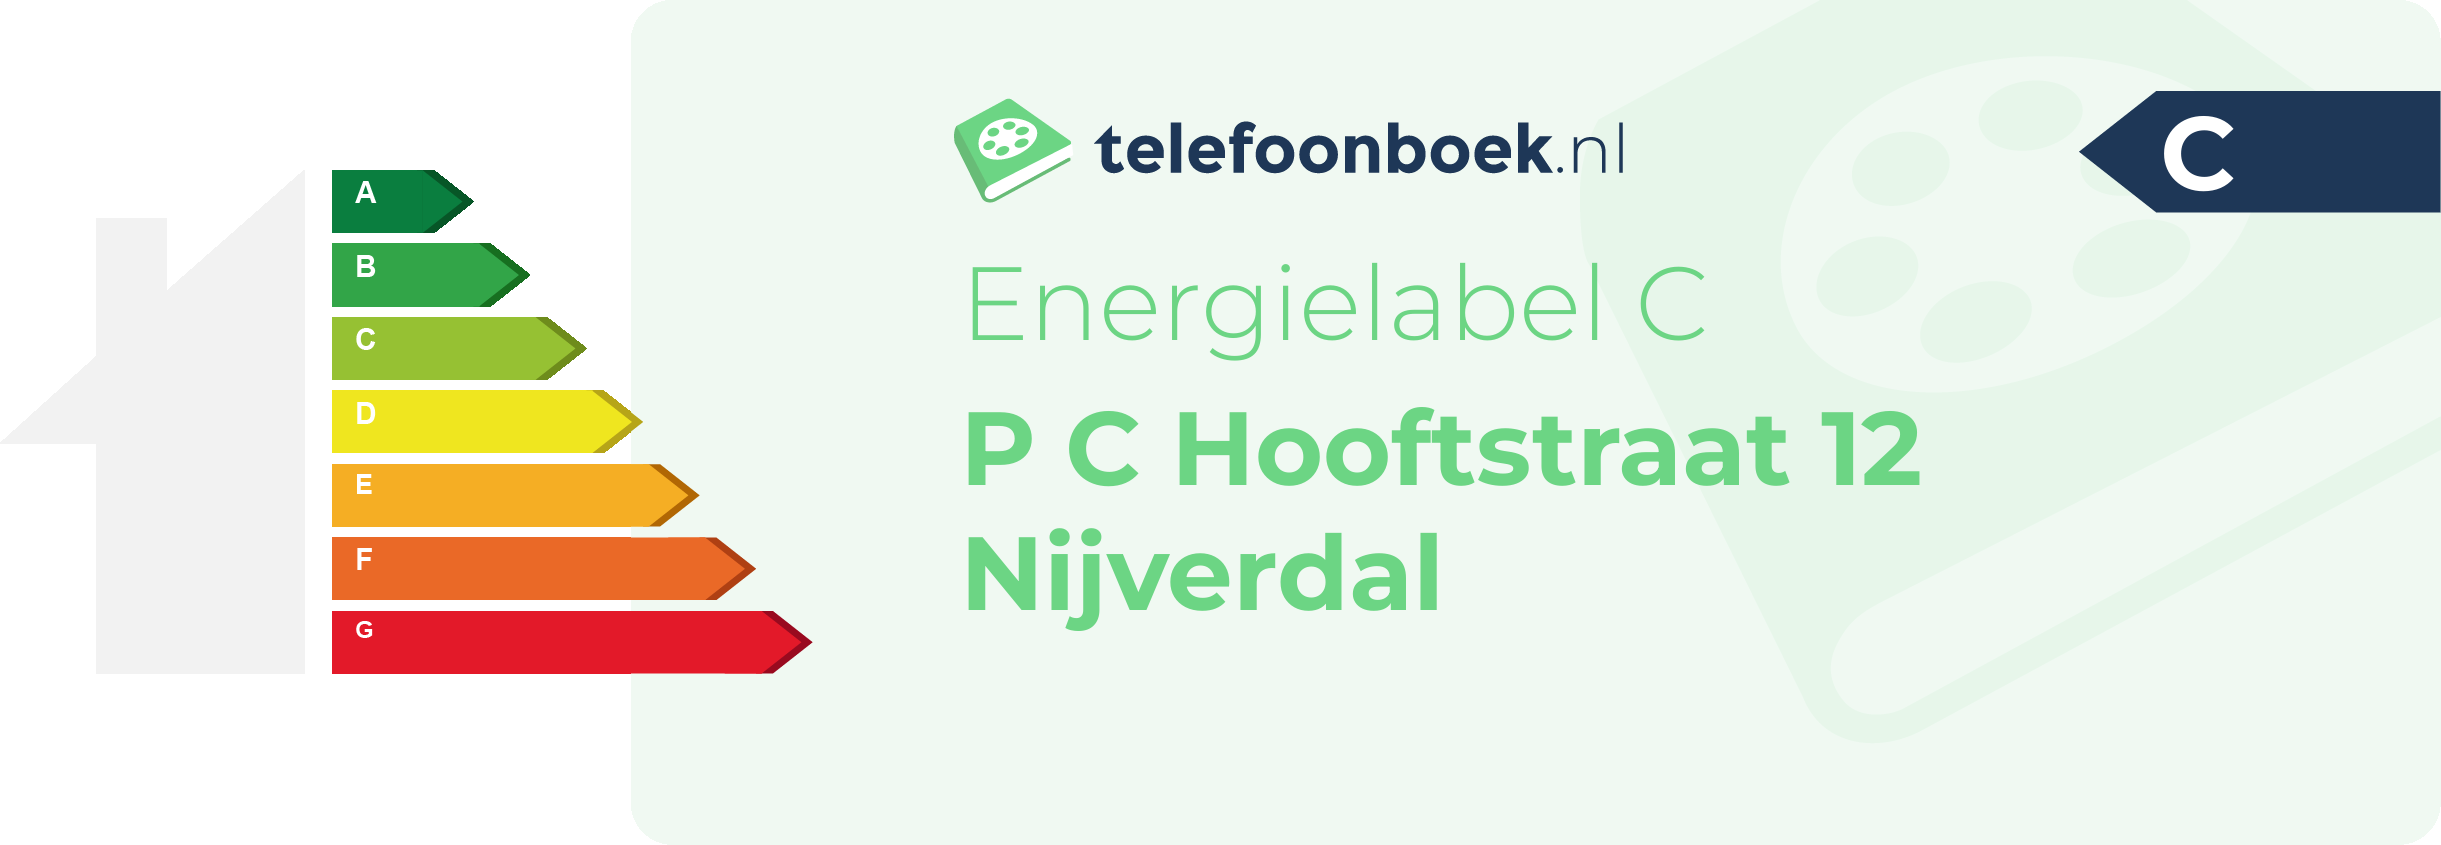 Energielabel P C Hooftstraat 12 Nijverdal